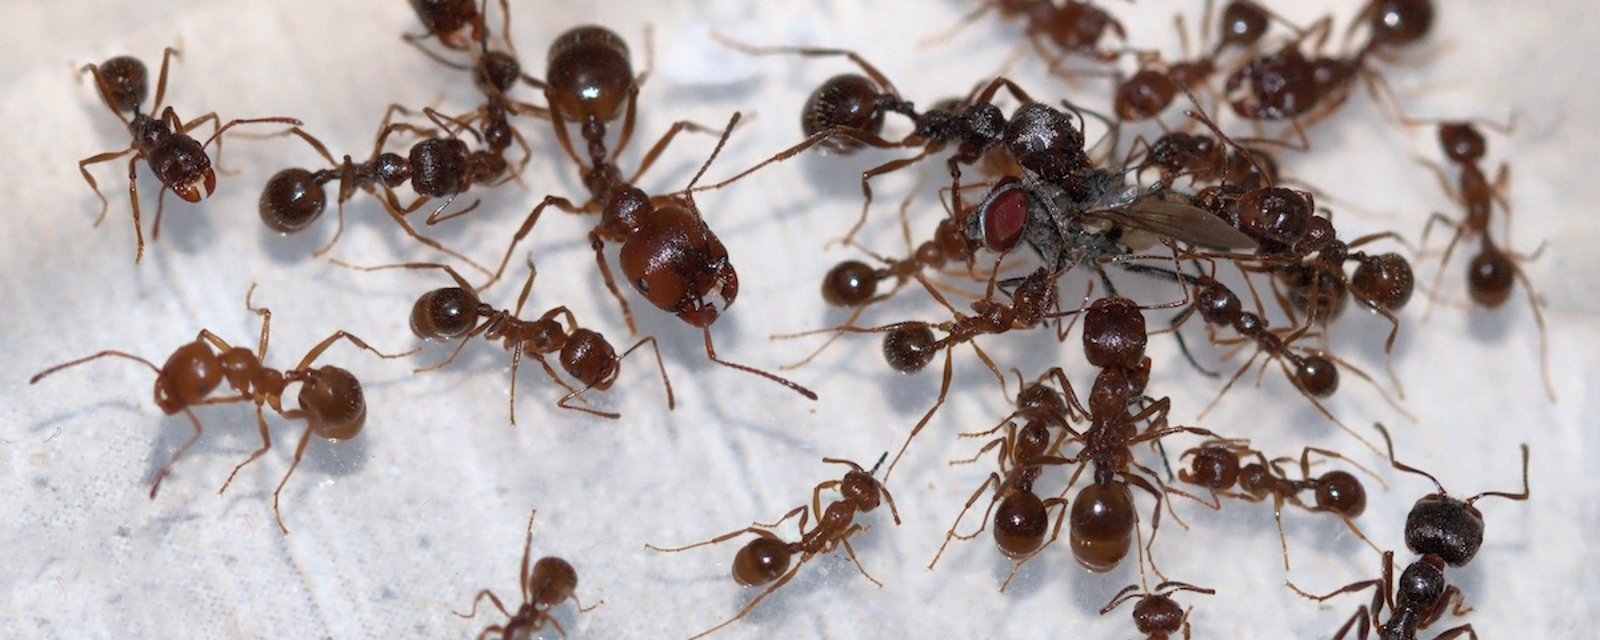 Comment se débarrasser naturellement des fourmis: 8 astuces